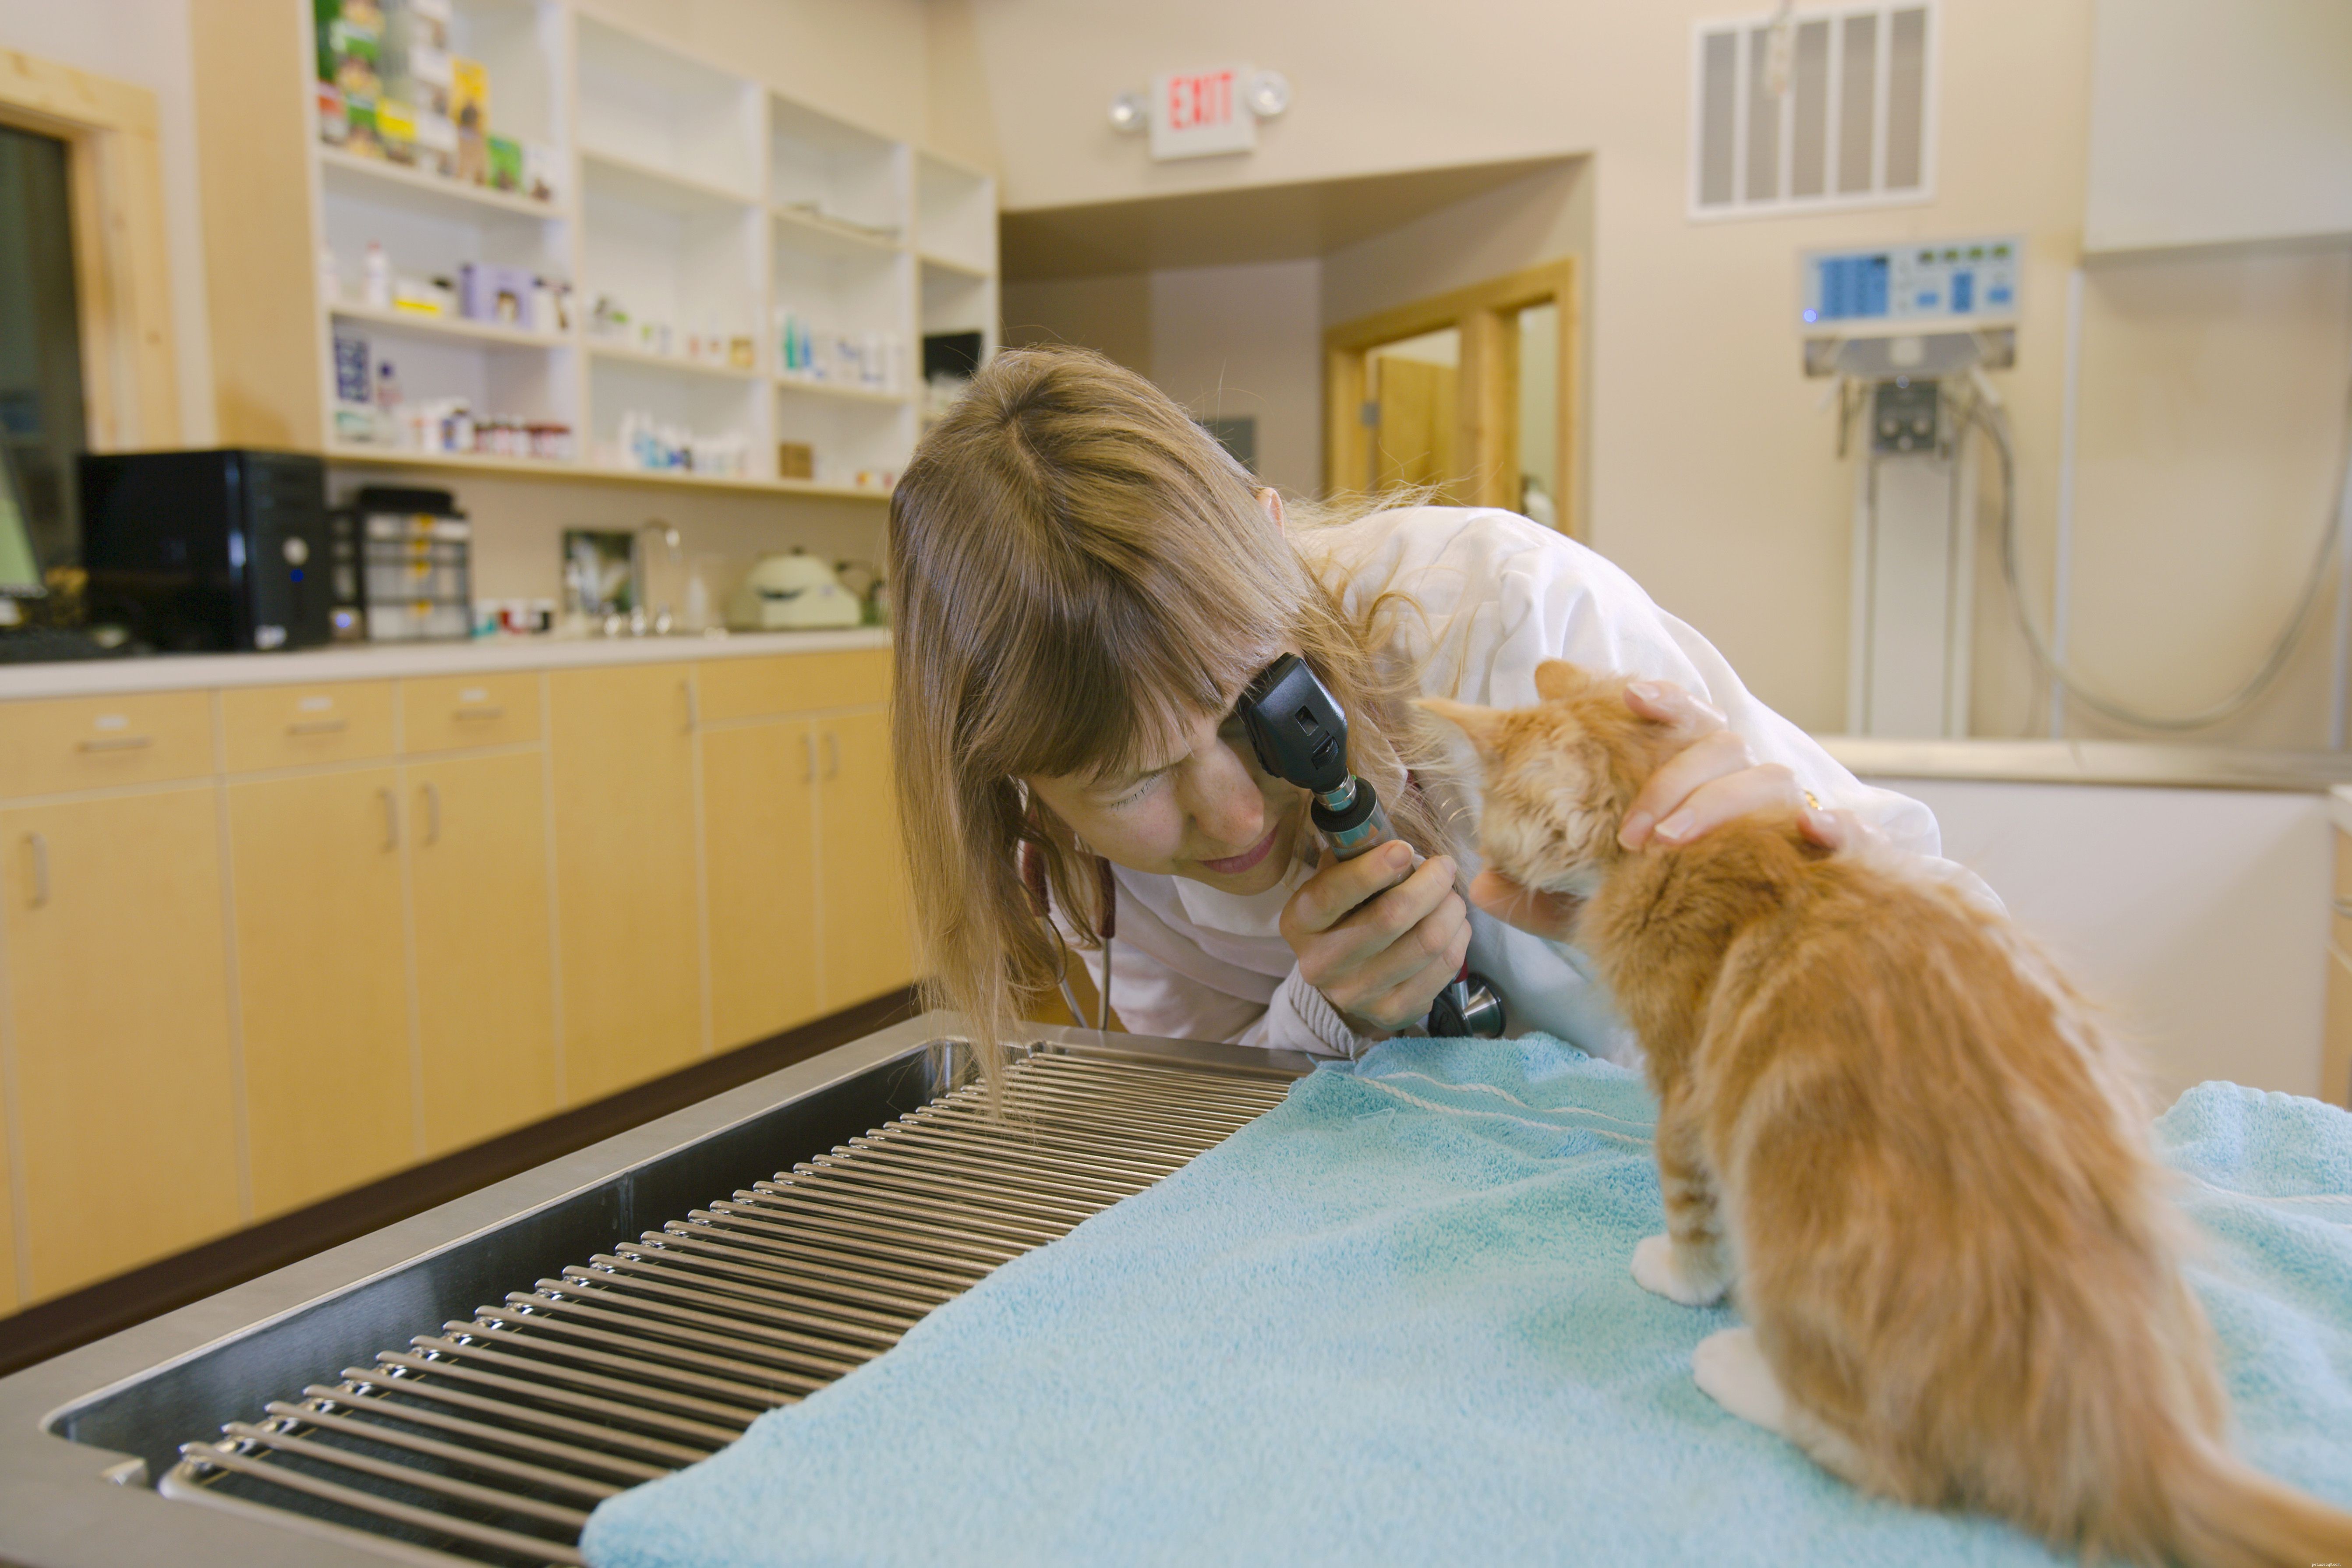 Comment préparer votre chaton à sa première visite chez le vétérinaire